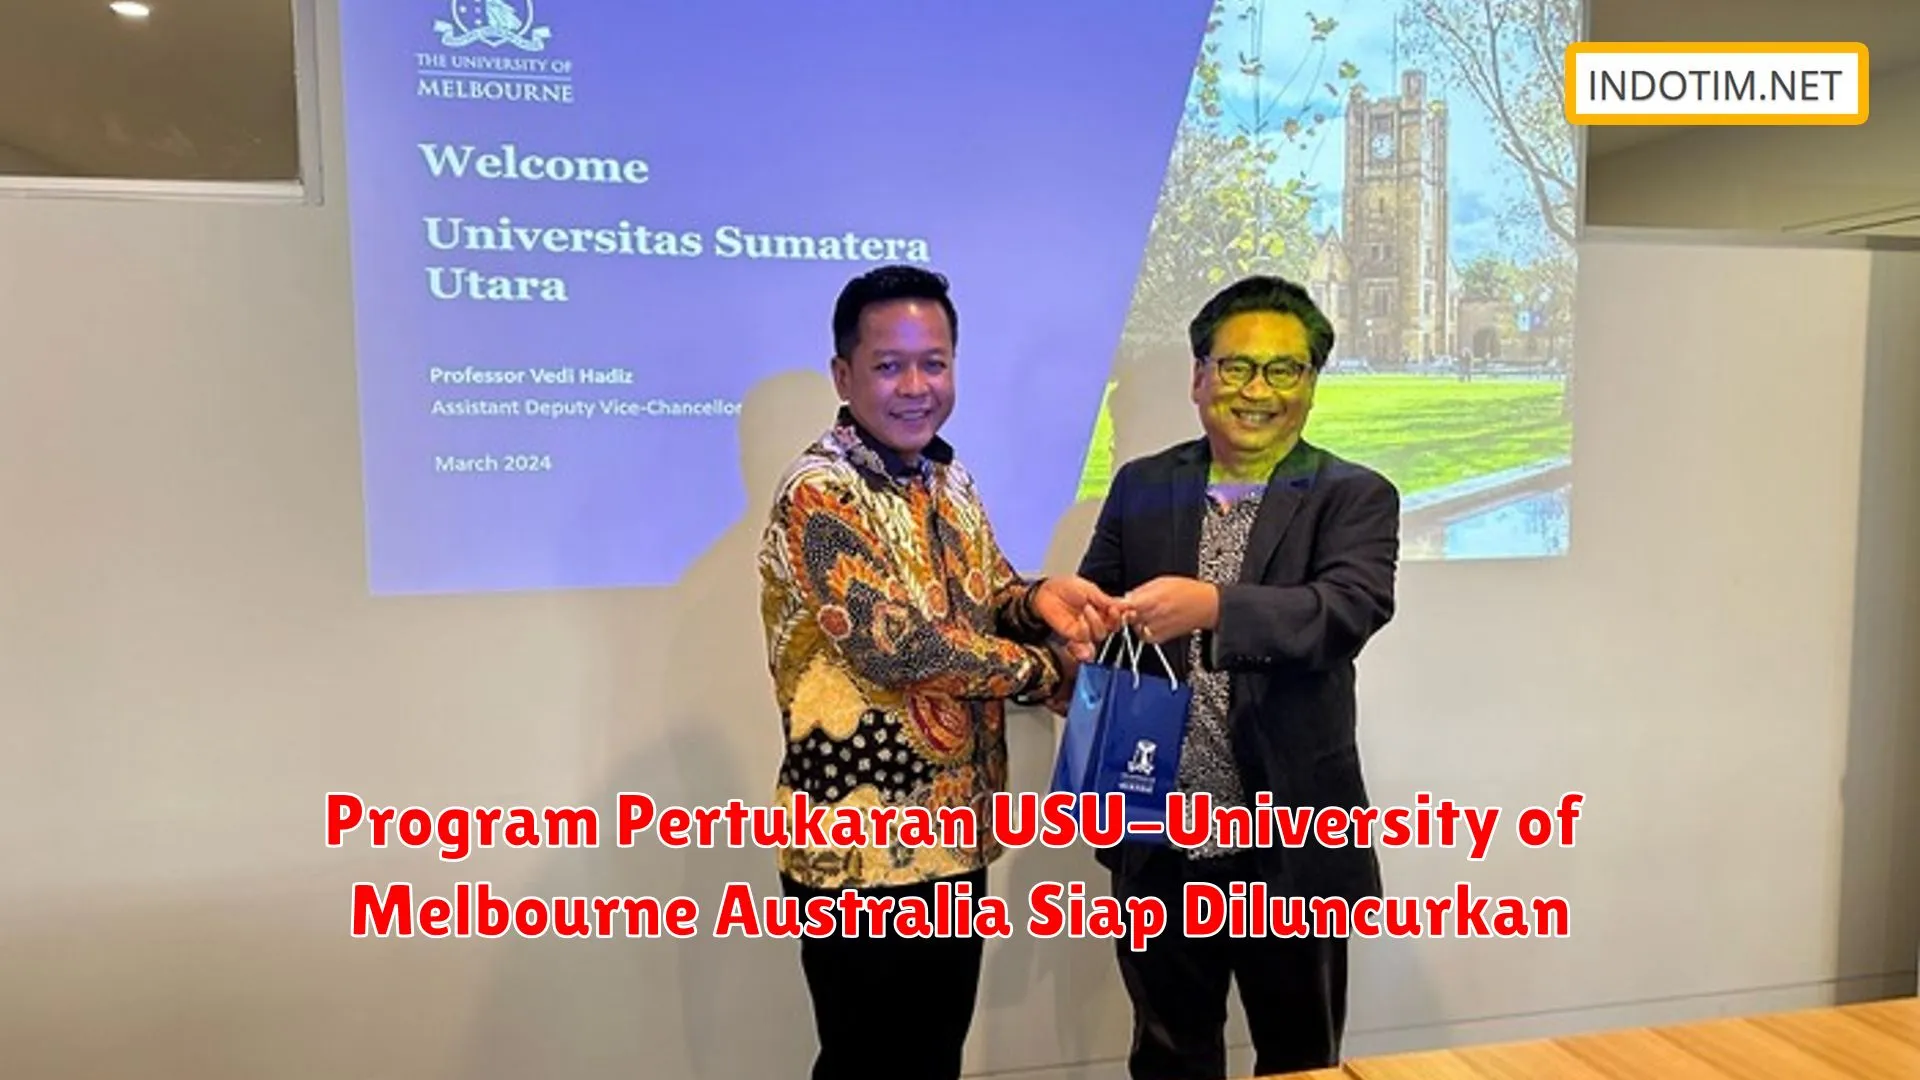 Program Pertukaran USU-University of Melbourne Australia Siap Diluncurkan